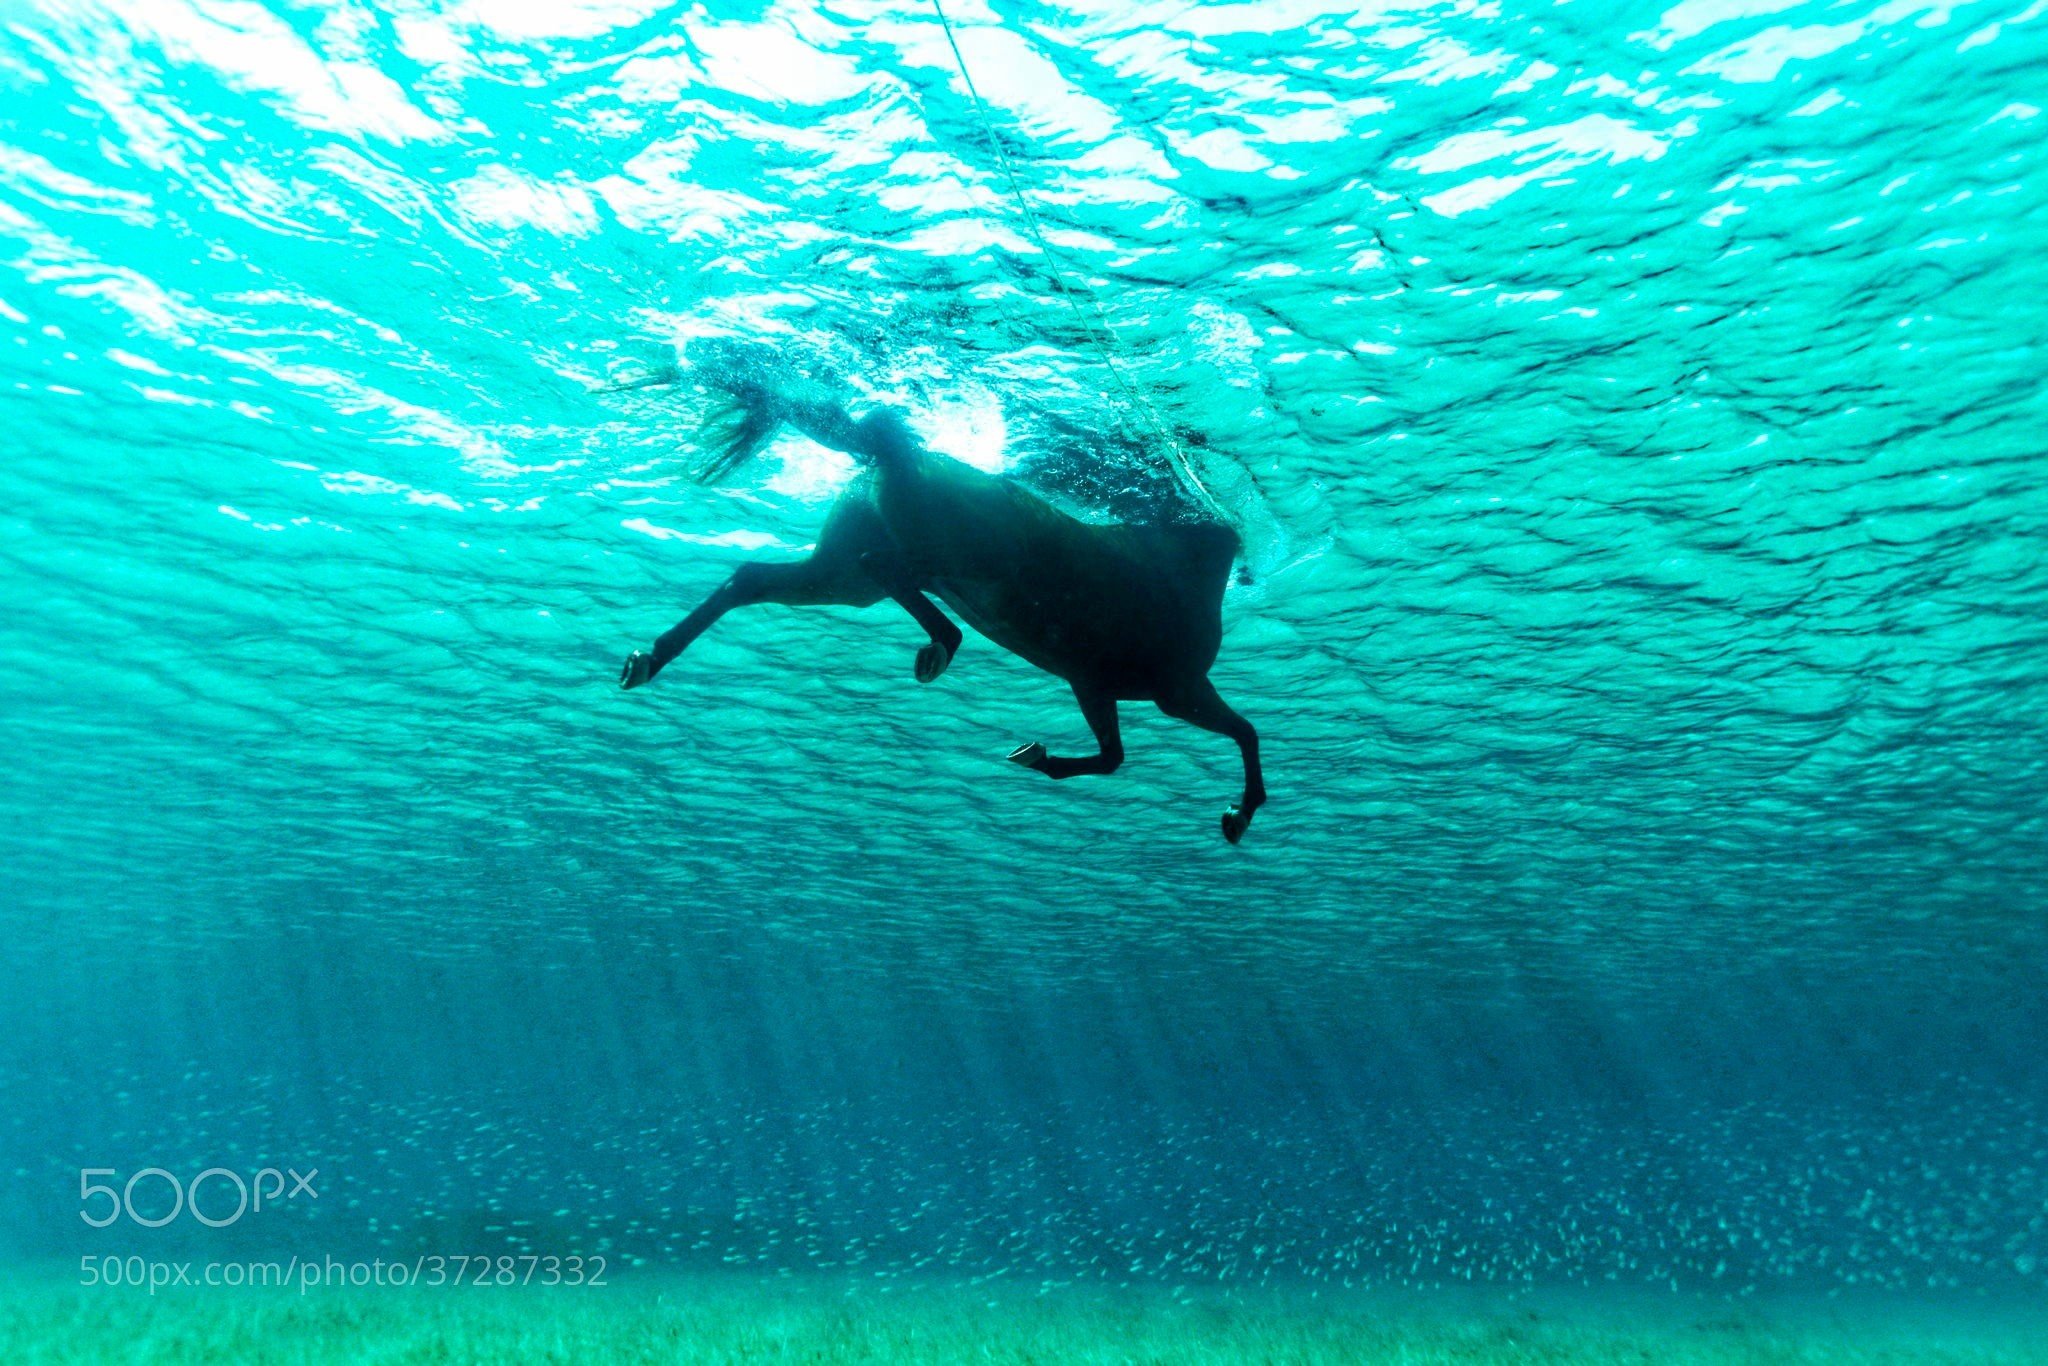 Kurt Arrigo, Water, Underwater, Nature, Animals, Swimming, Horse, Sunlight, 500px, Sea Wallpaper